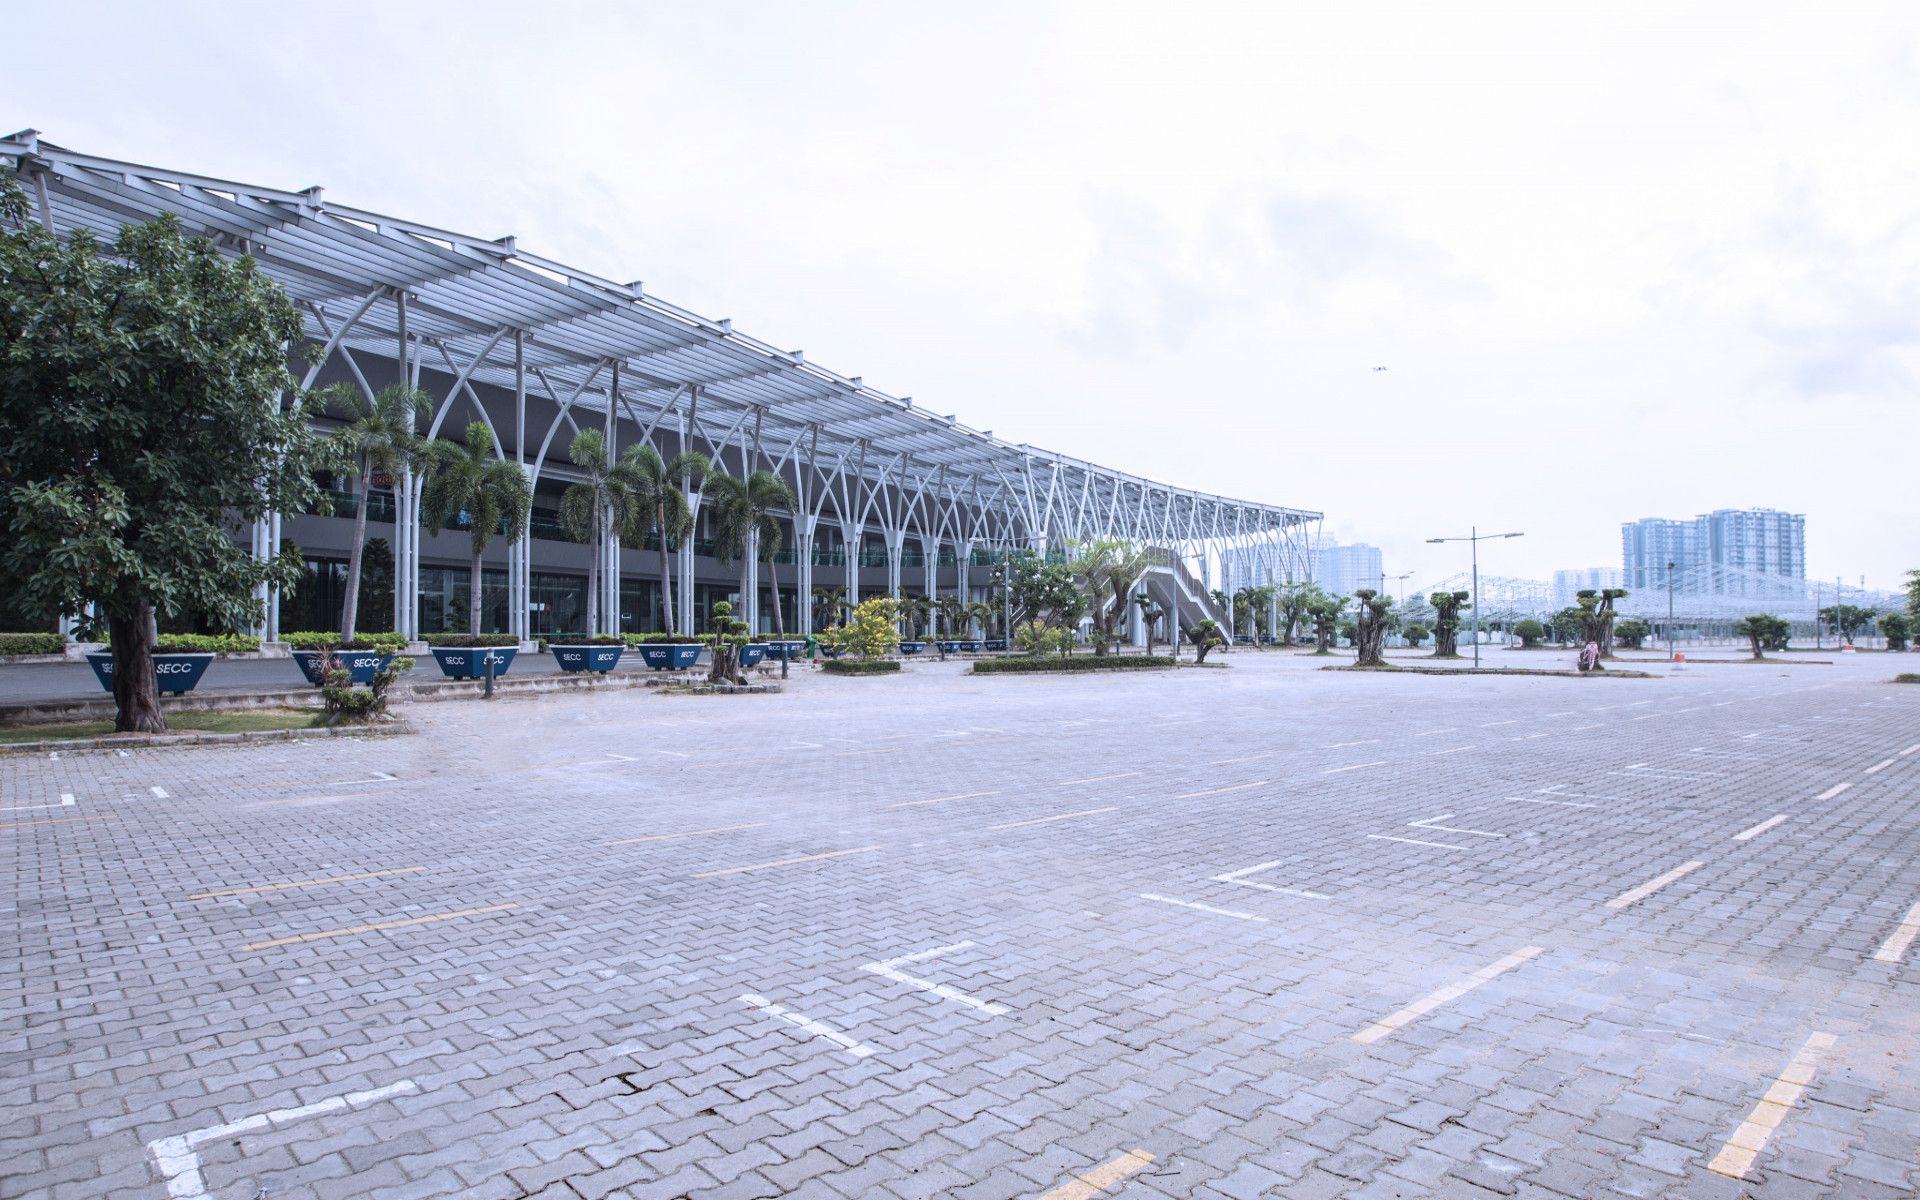 Khu đa chức năng - Trung tâm Hội chợ & Triển lãm Sài Gòn (SECC)